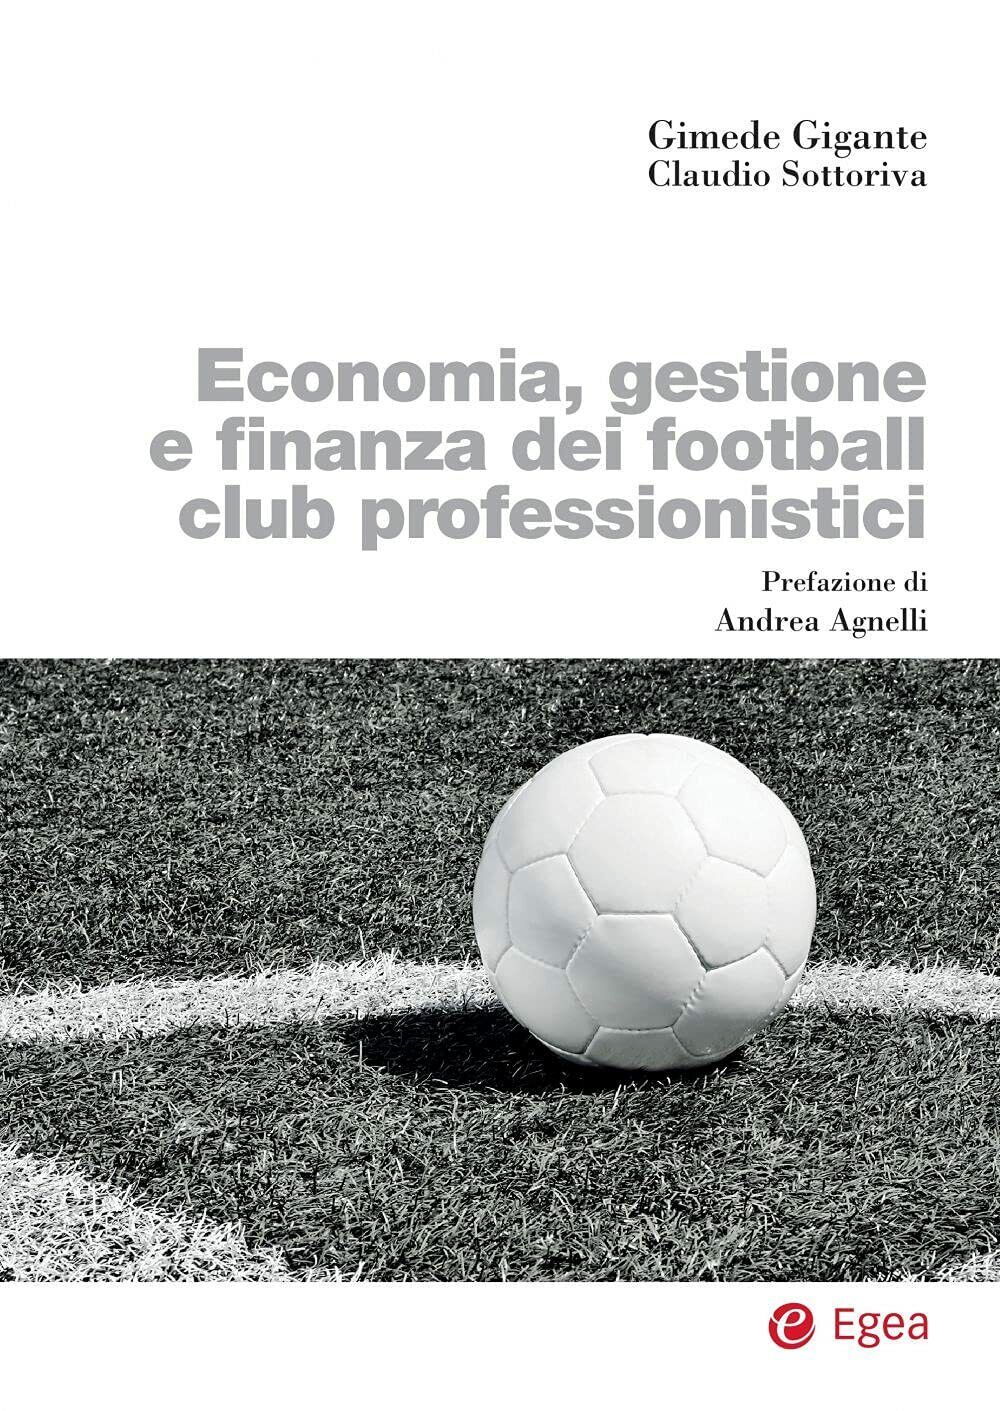 Economia, gestione e finanza dei football club professionistici - Egea - 2021